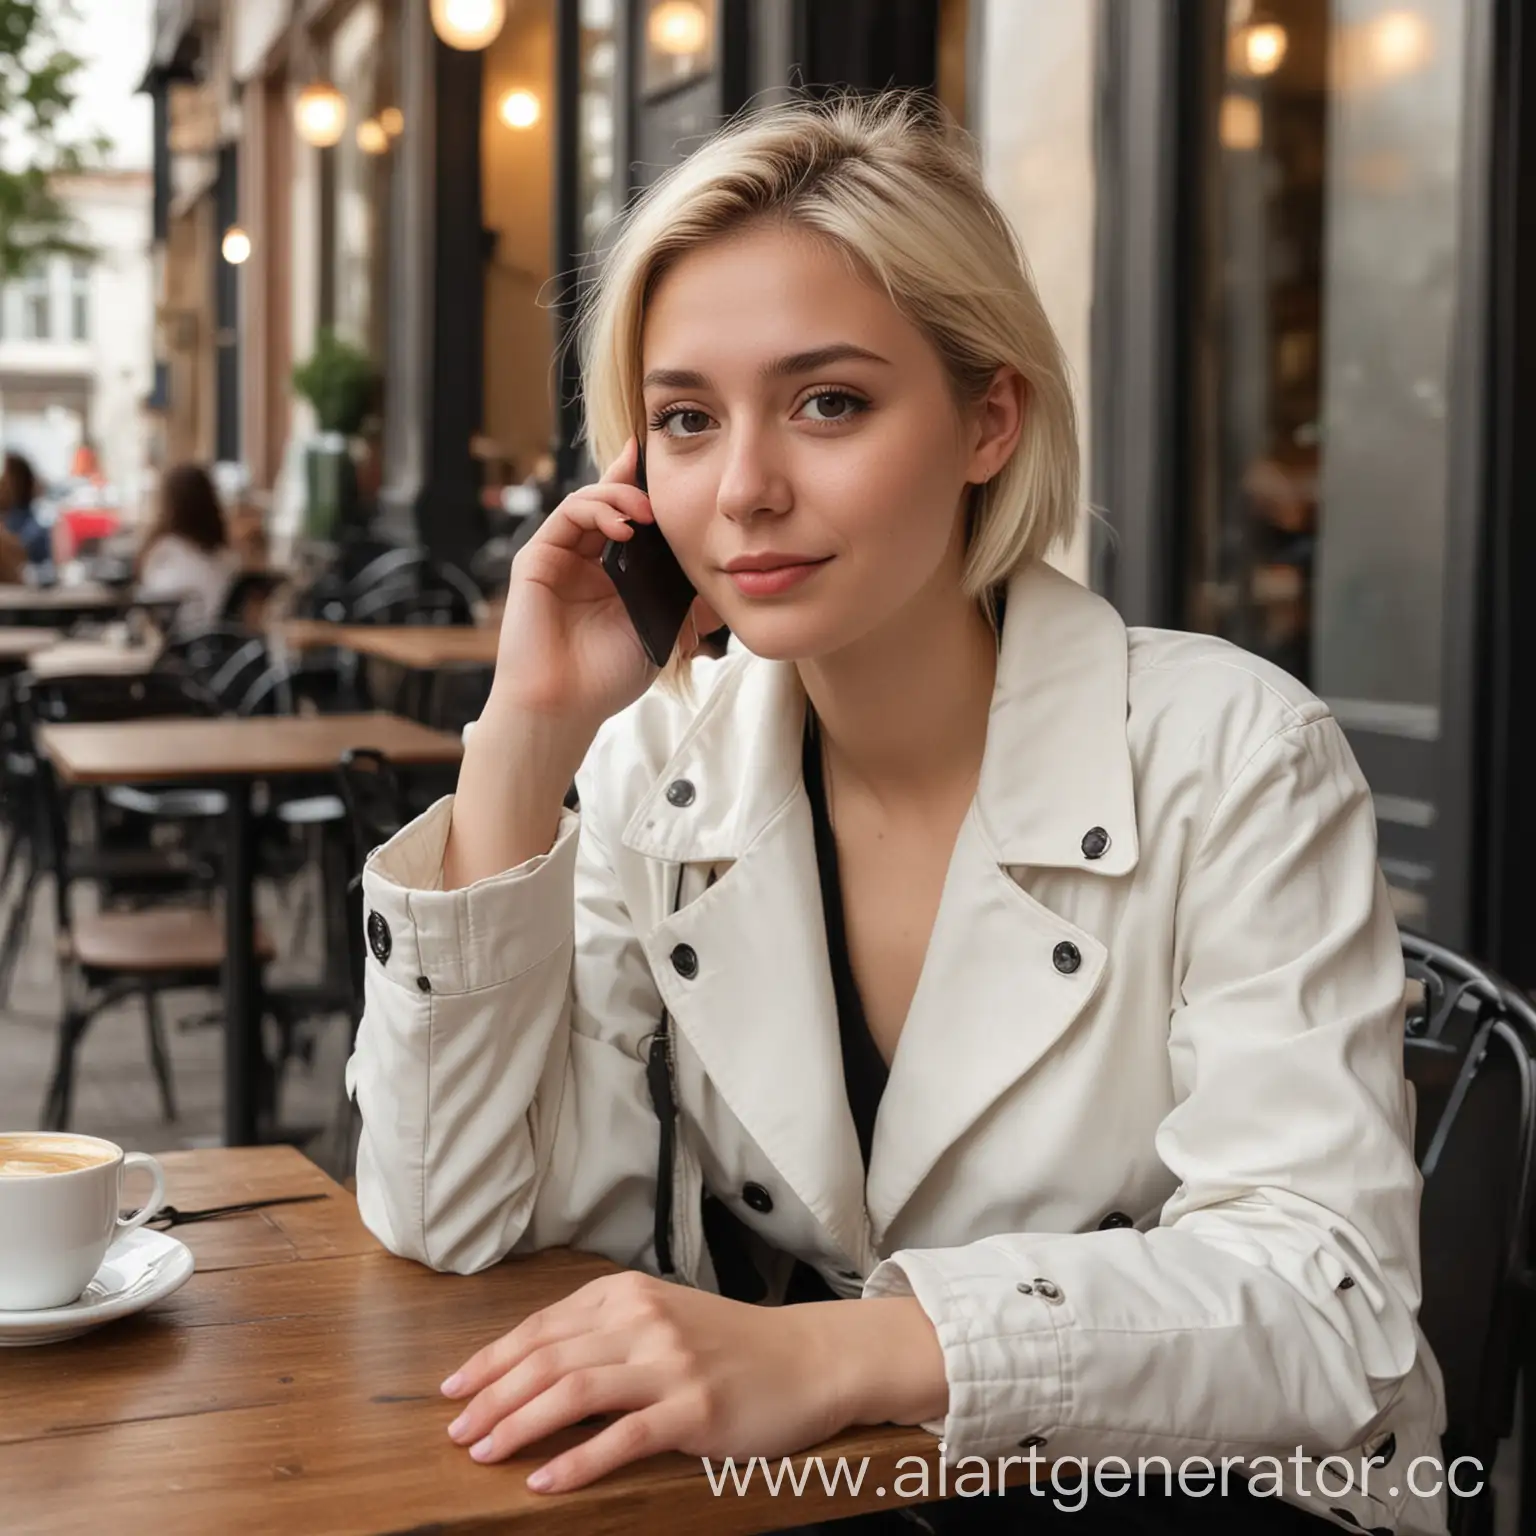 Реальная фотография. Девушка 25 лет, сидит в кафе и разговаривает по мобильному телефону. У девушки короткие светлые волосы, белый пиджак и длинное черное платье. 